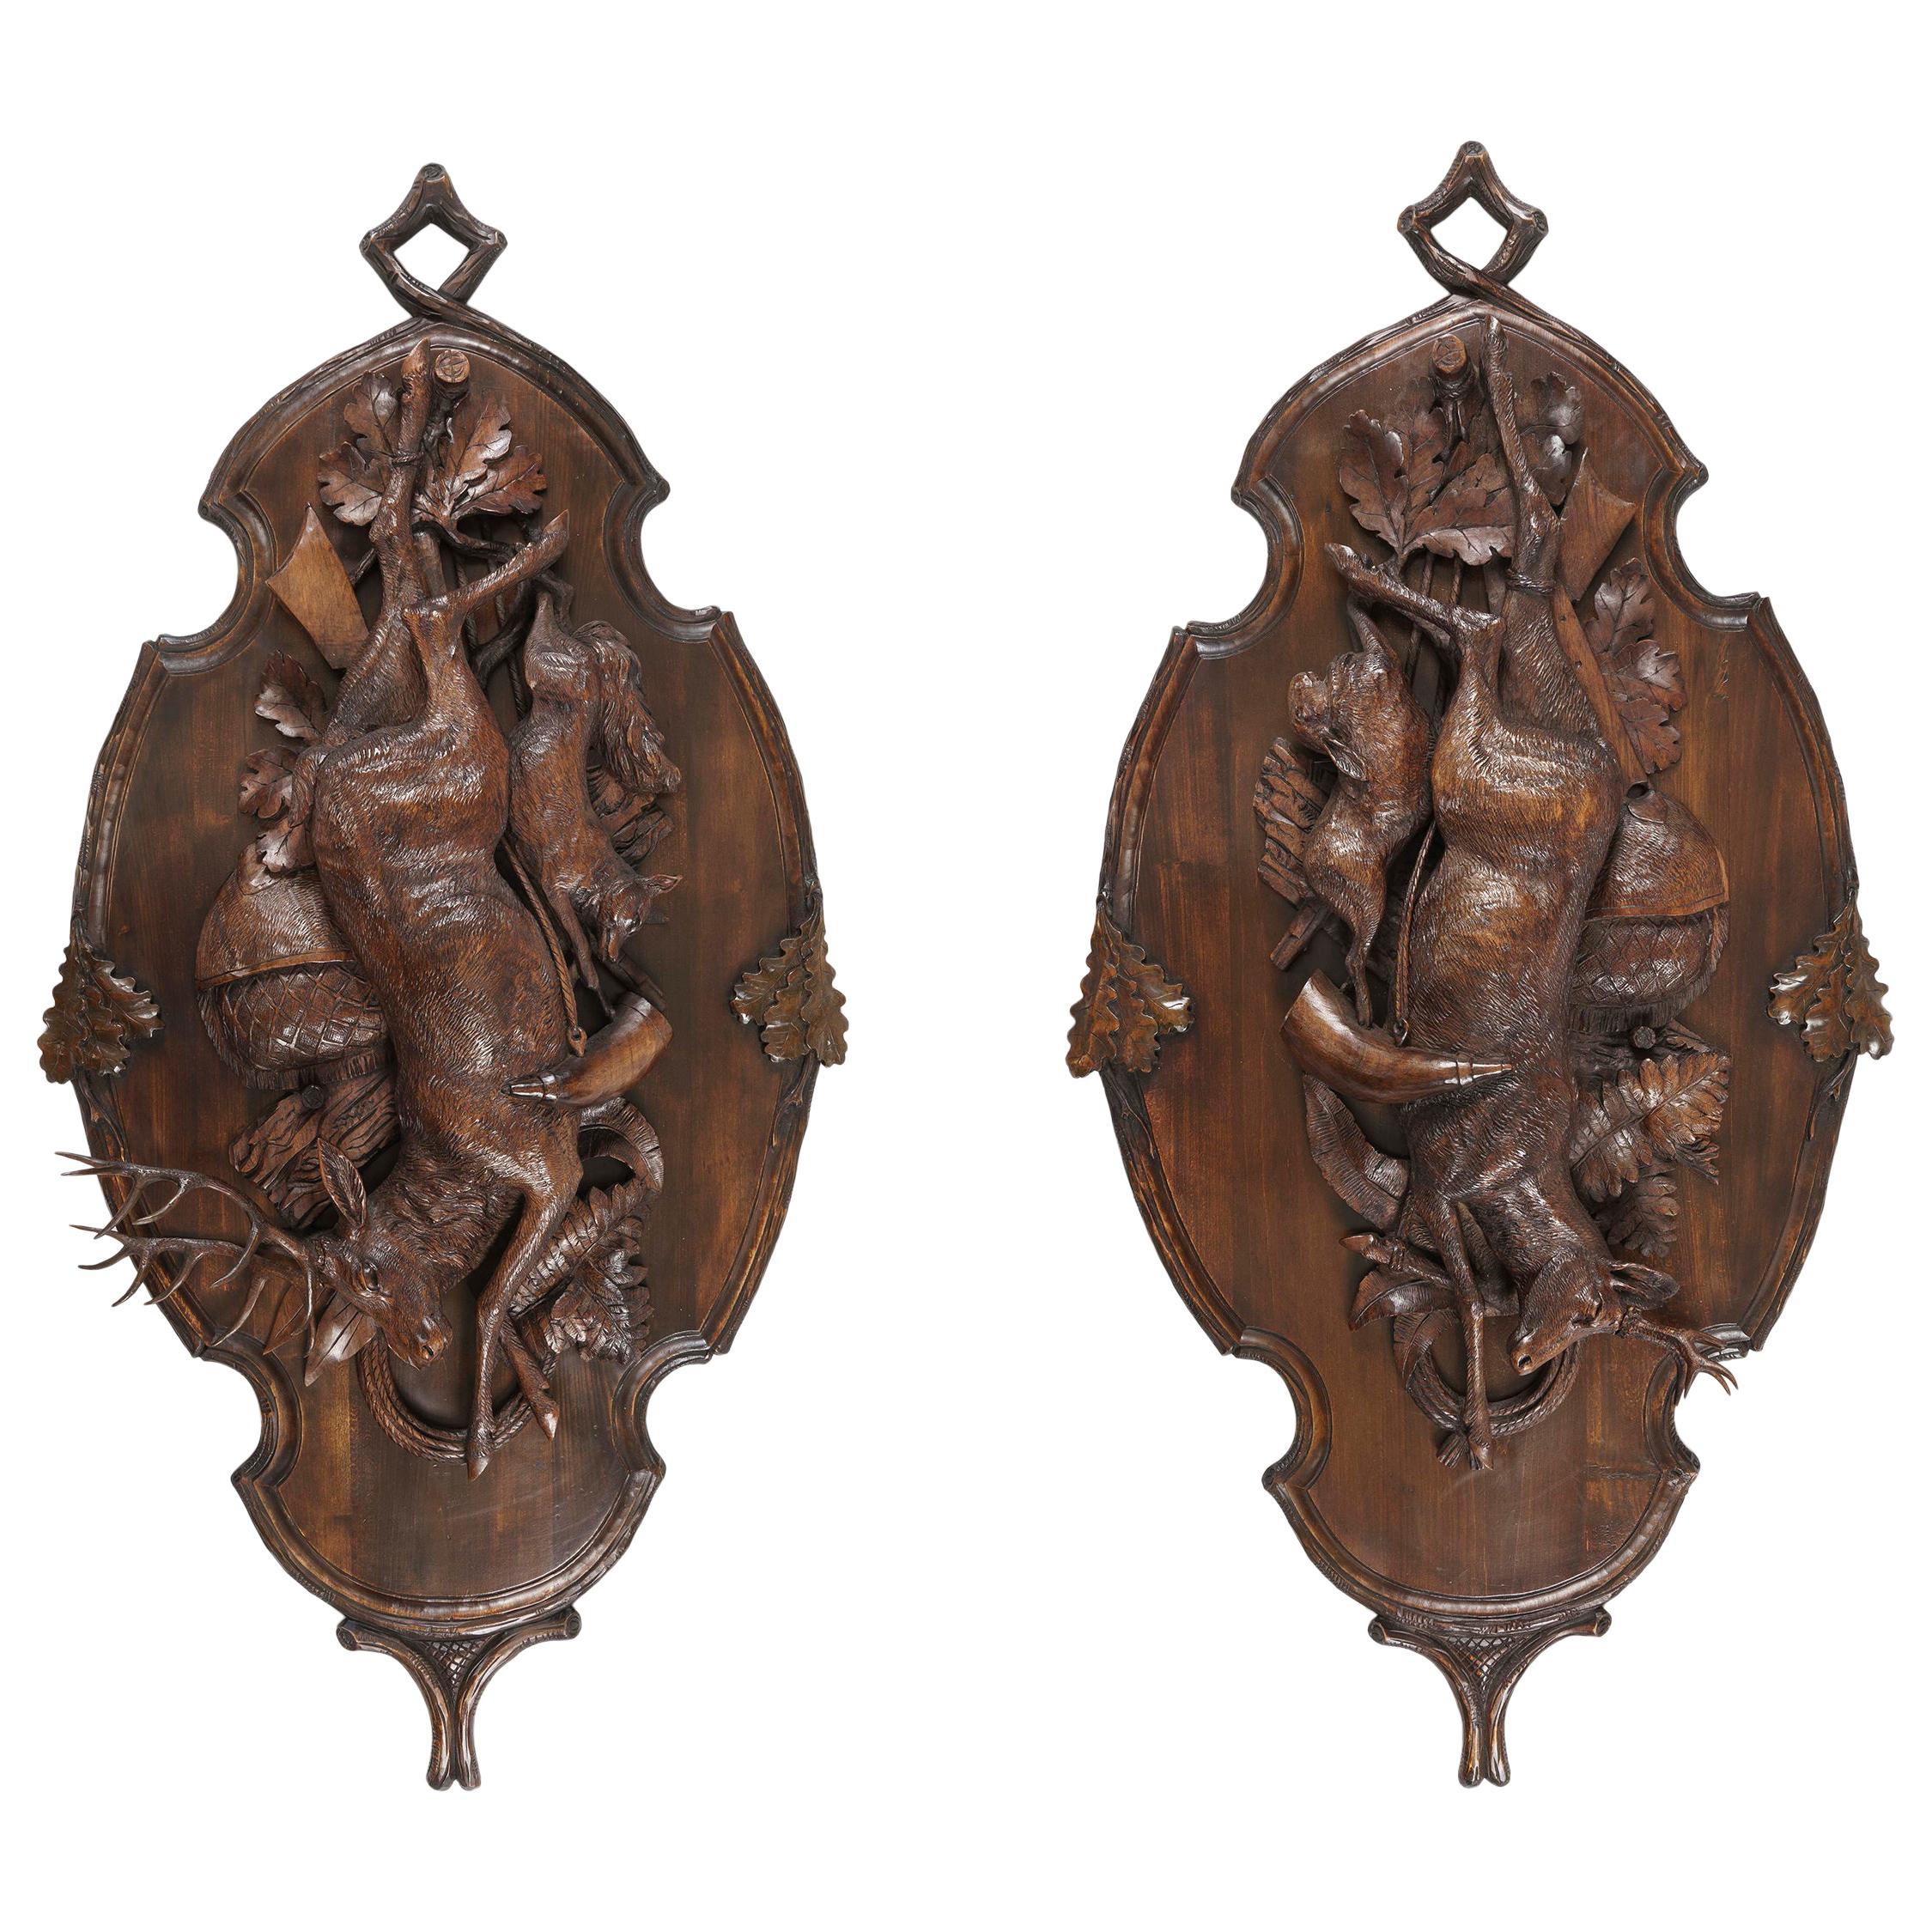 Grande paire de plaques trophées sculptées de Black Forest représentant un cerf, un lièvre et un renard